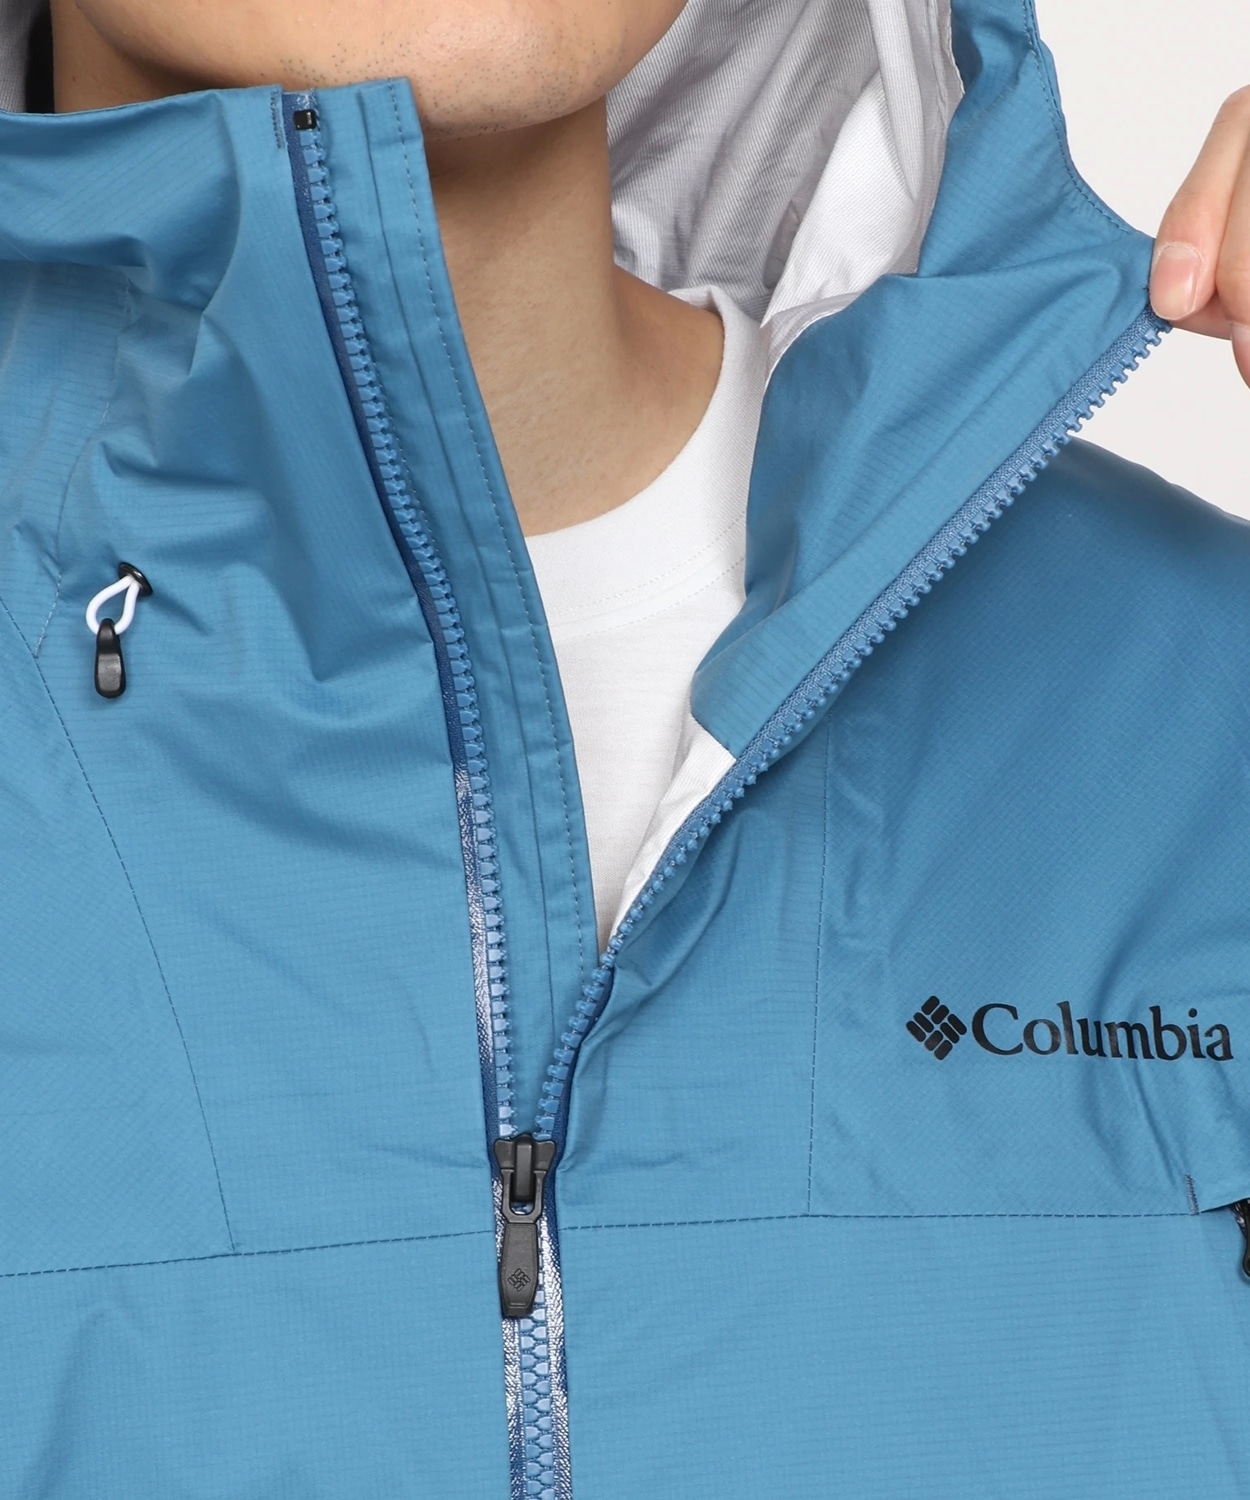 コロンビア公式サイトマウンテンズアーコーリング2ジャケット(S Black): アウトレット商品以外用│アウトドア用品のコロンビアスポーツウェア 公式通販サイト